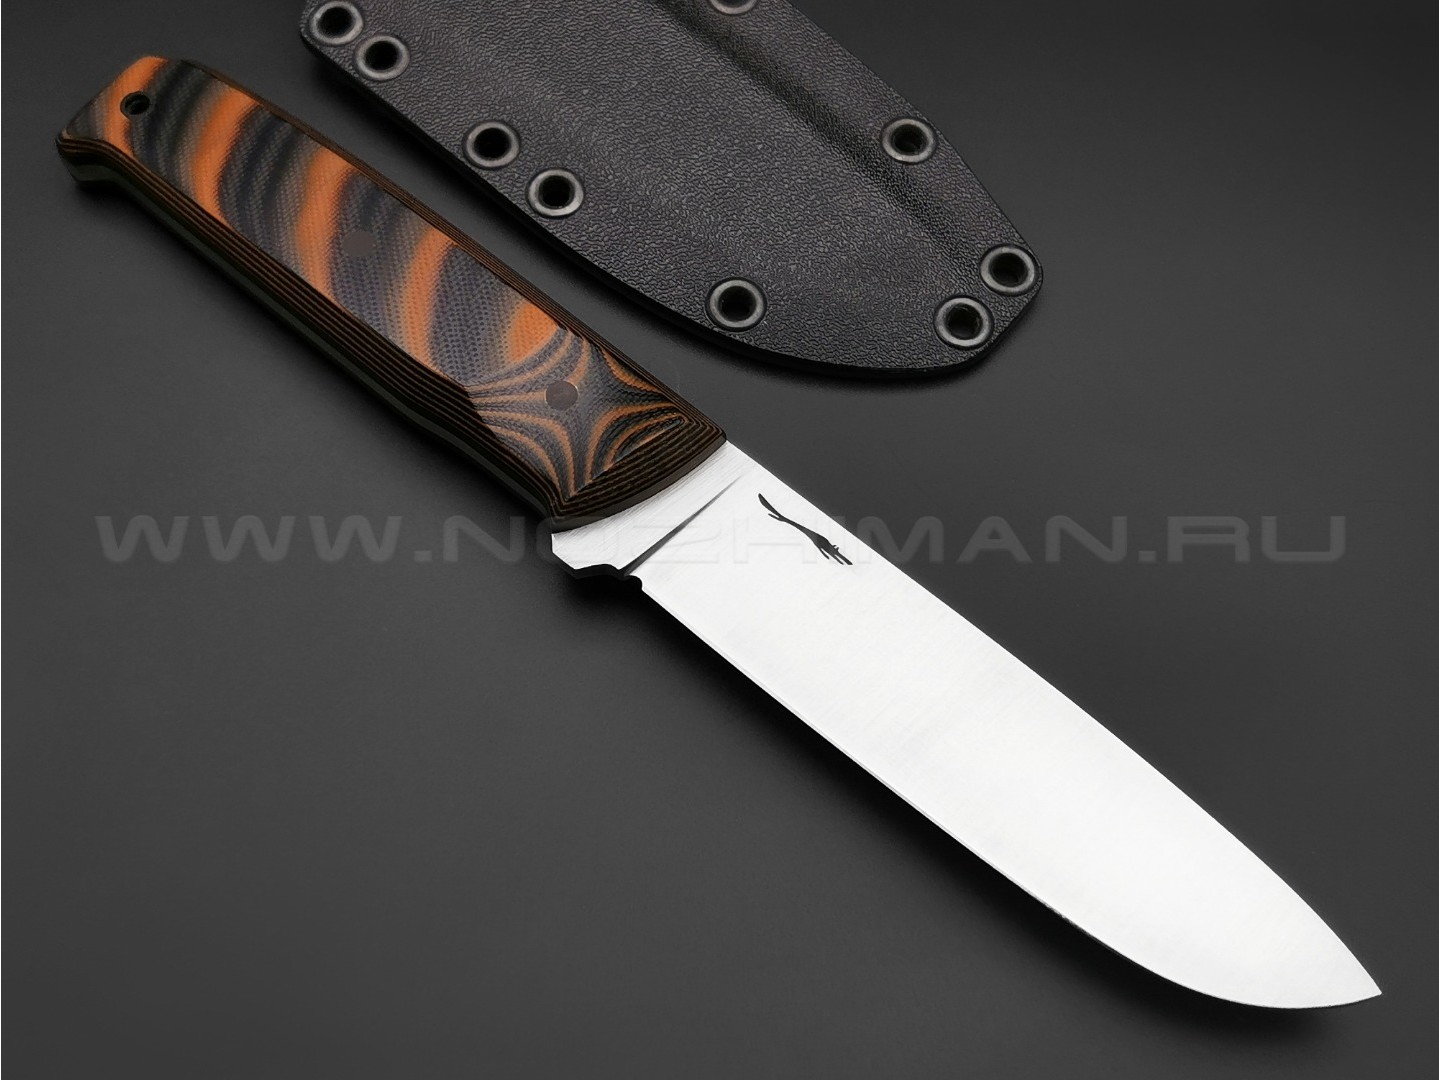 Волчий Век нож Wolfkniven сталь Niolox WA, рукоять G10 black & brown